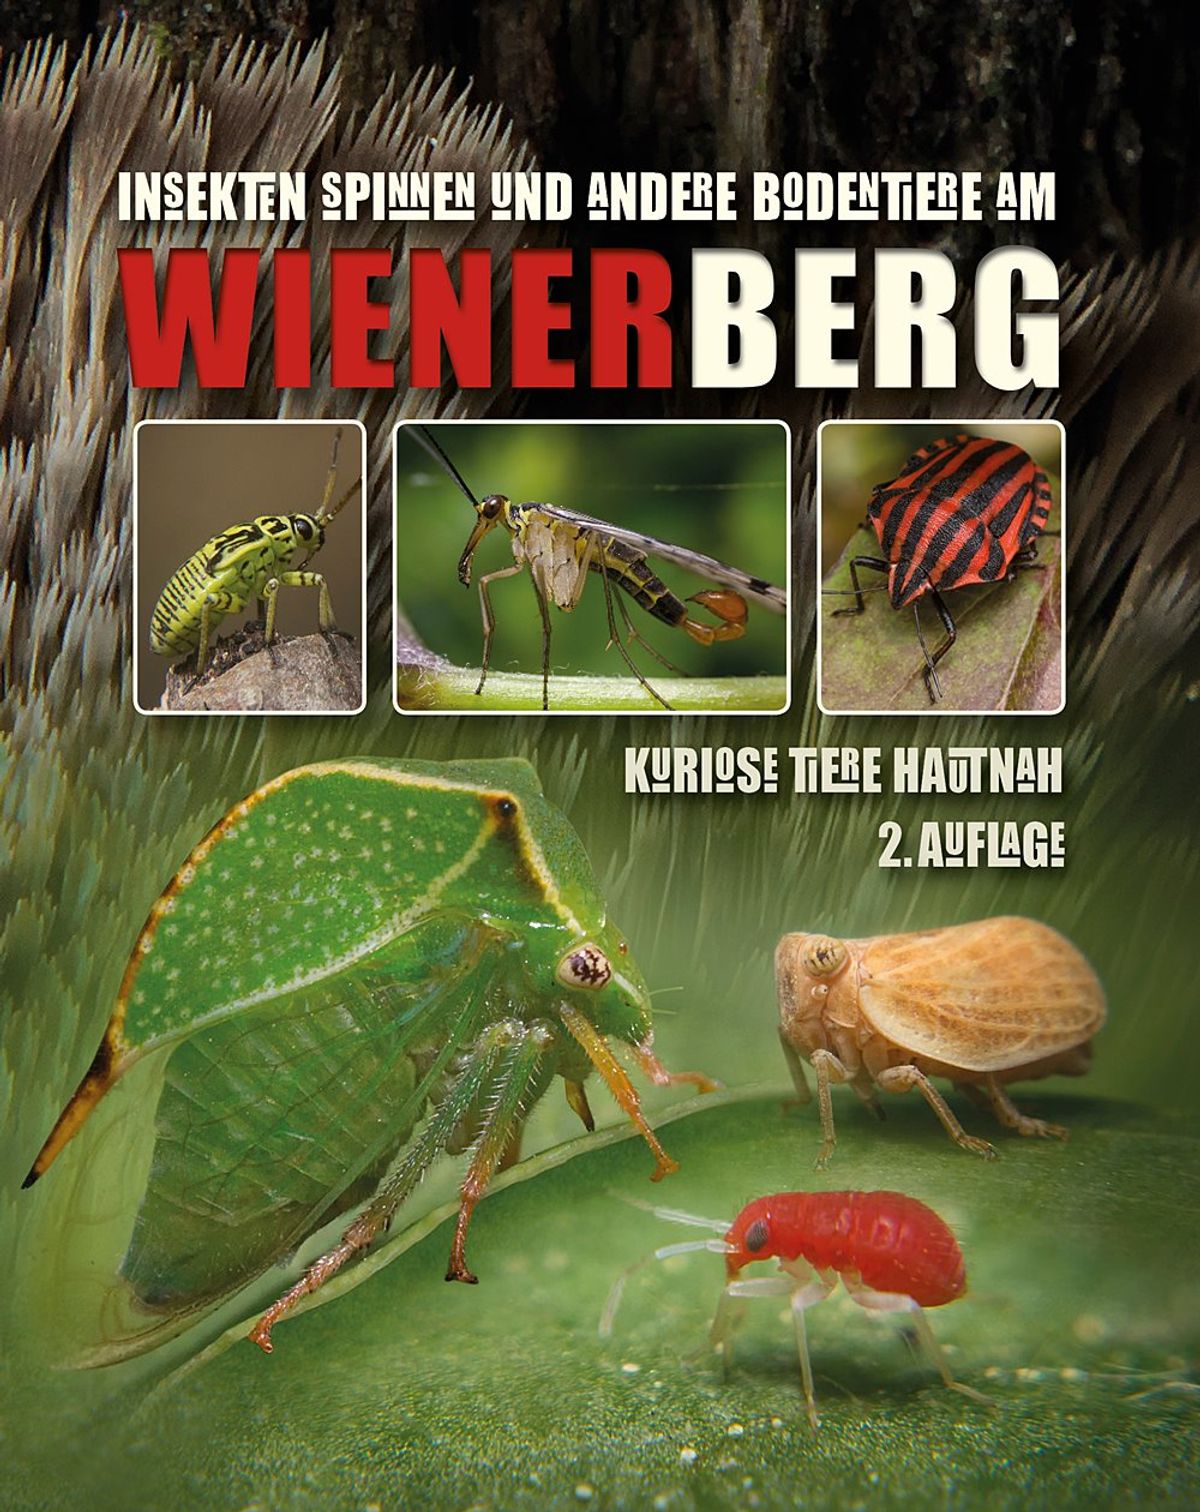 Tierbuch Wienerberg: Insekten Spinnen und andere Bodentiere am Wienerberg – kuriose Tiere hautnah 2. Auflage